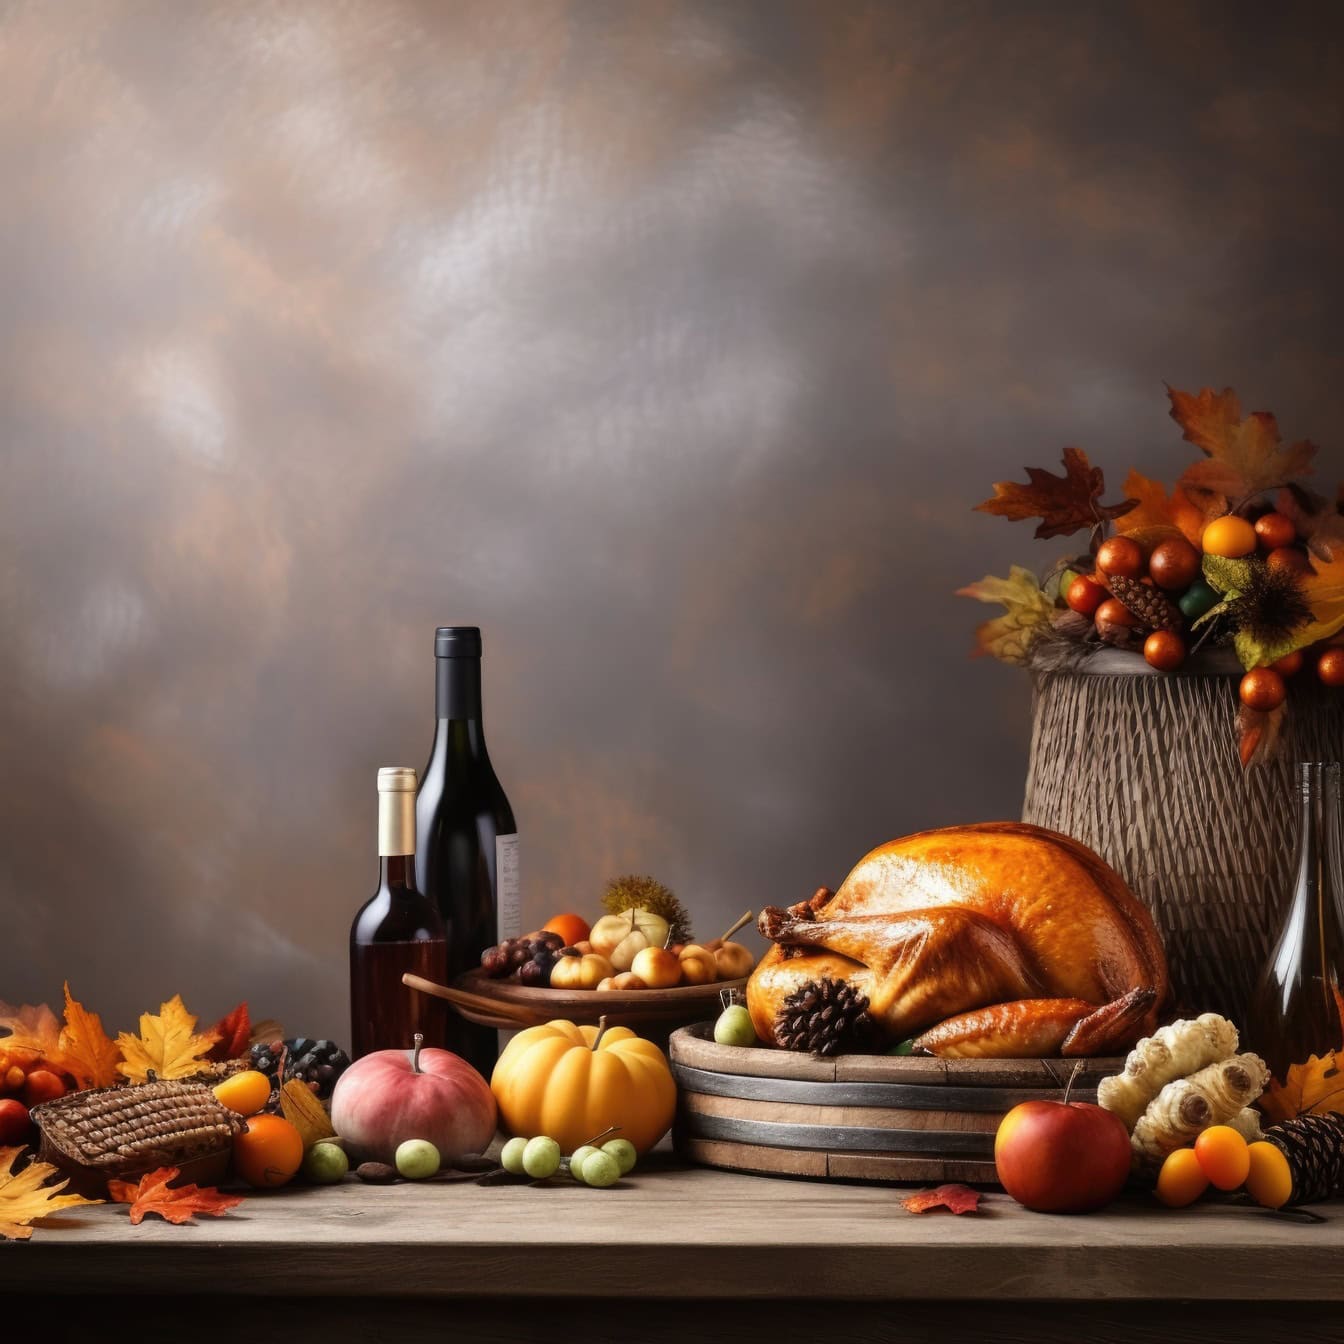 Asztal ételekkel és borosüvegekkel, a hálaadási vacsora illusztrációja